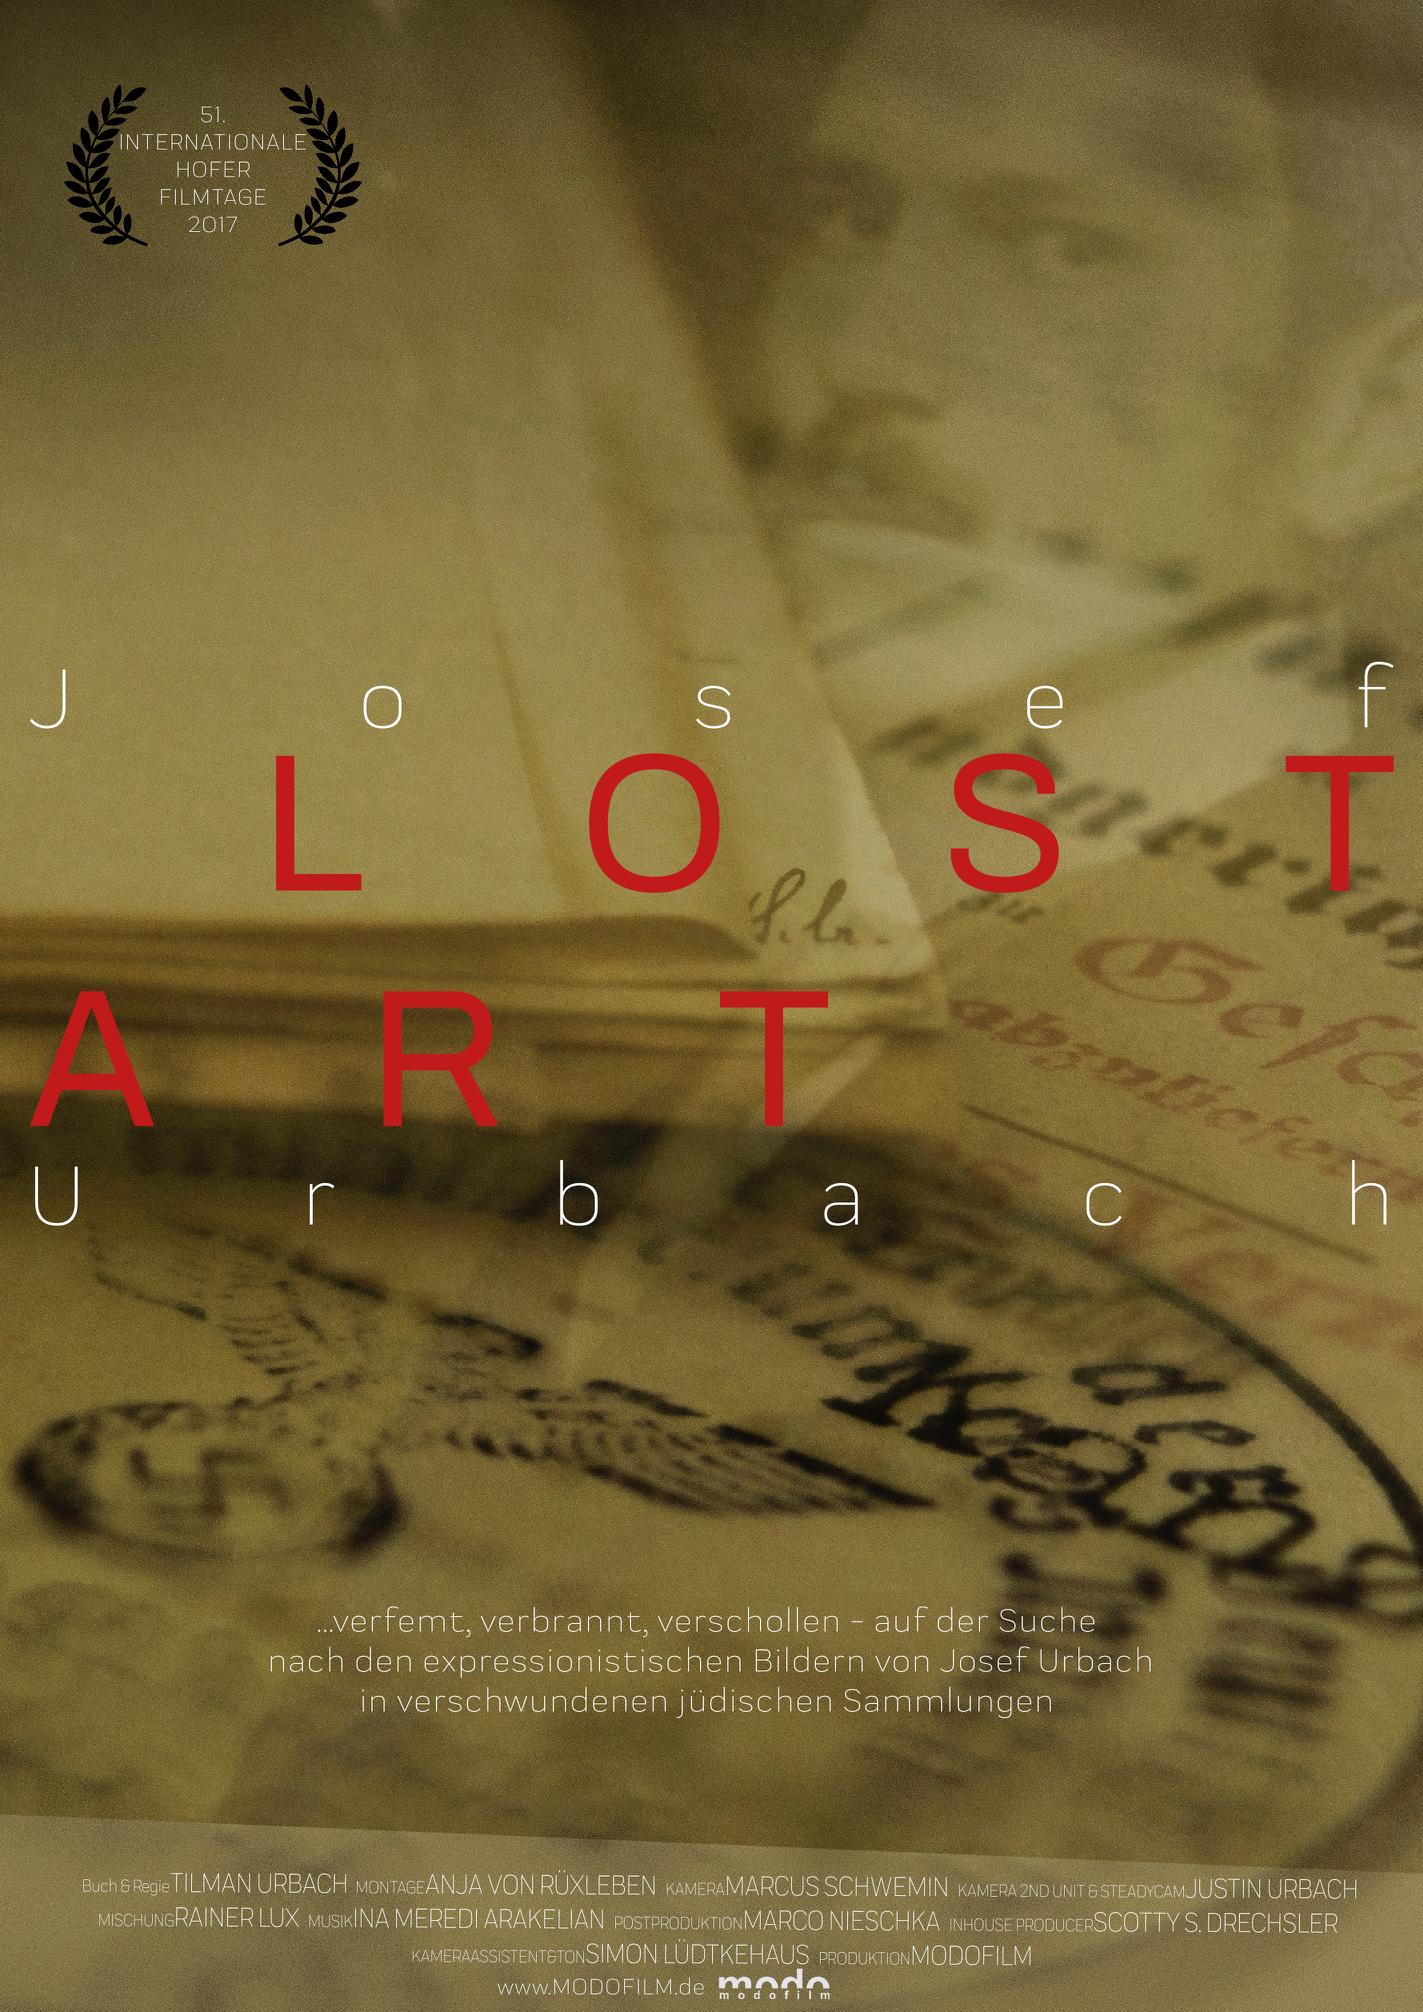 Josef Urbach - Lost Art